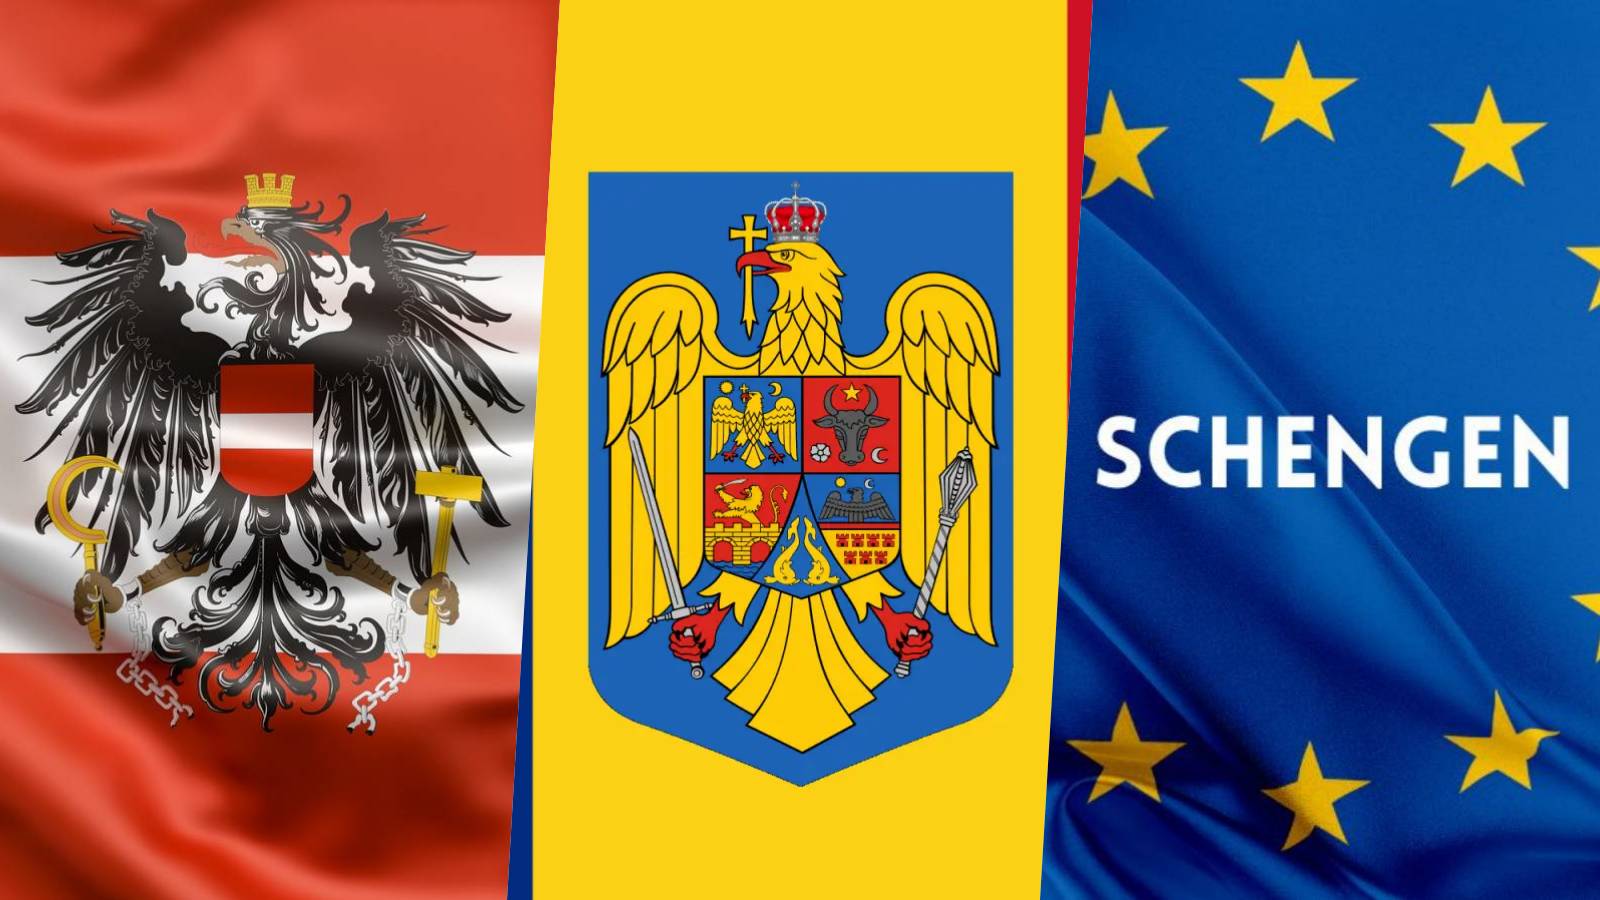 Oficjalne środki Austrii W LAST MINUTE Niemcy celują w przystąpienie Rumunii do Schengen